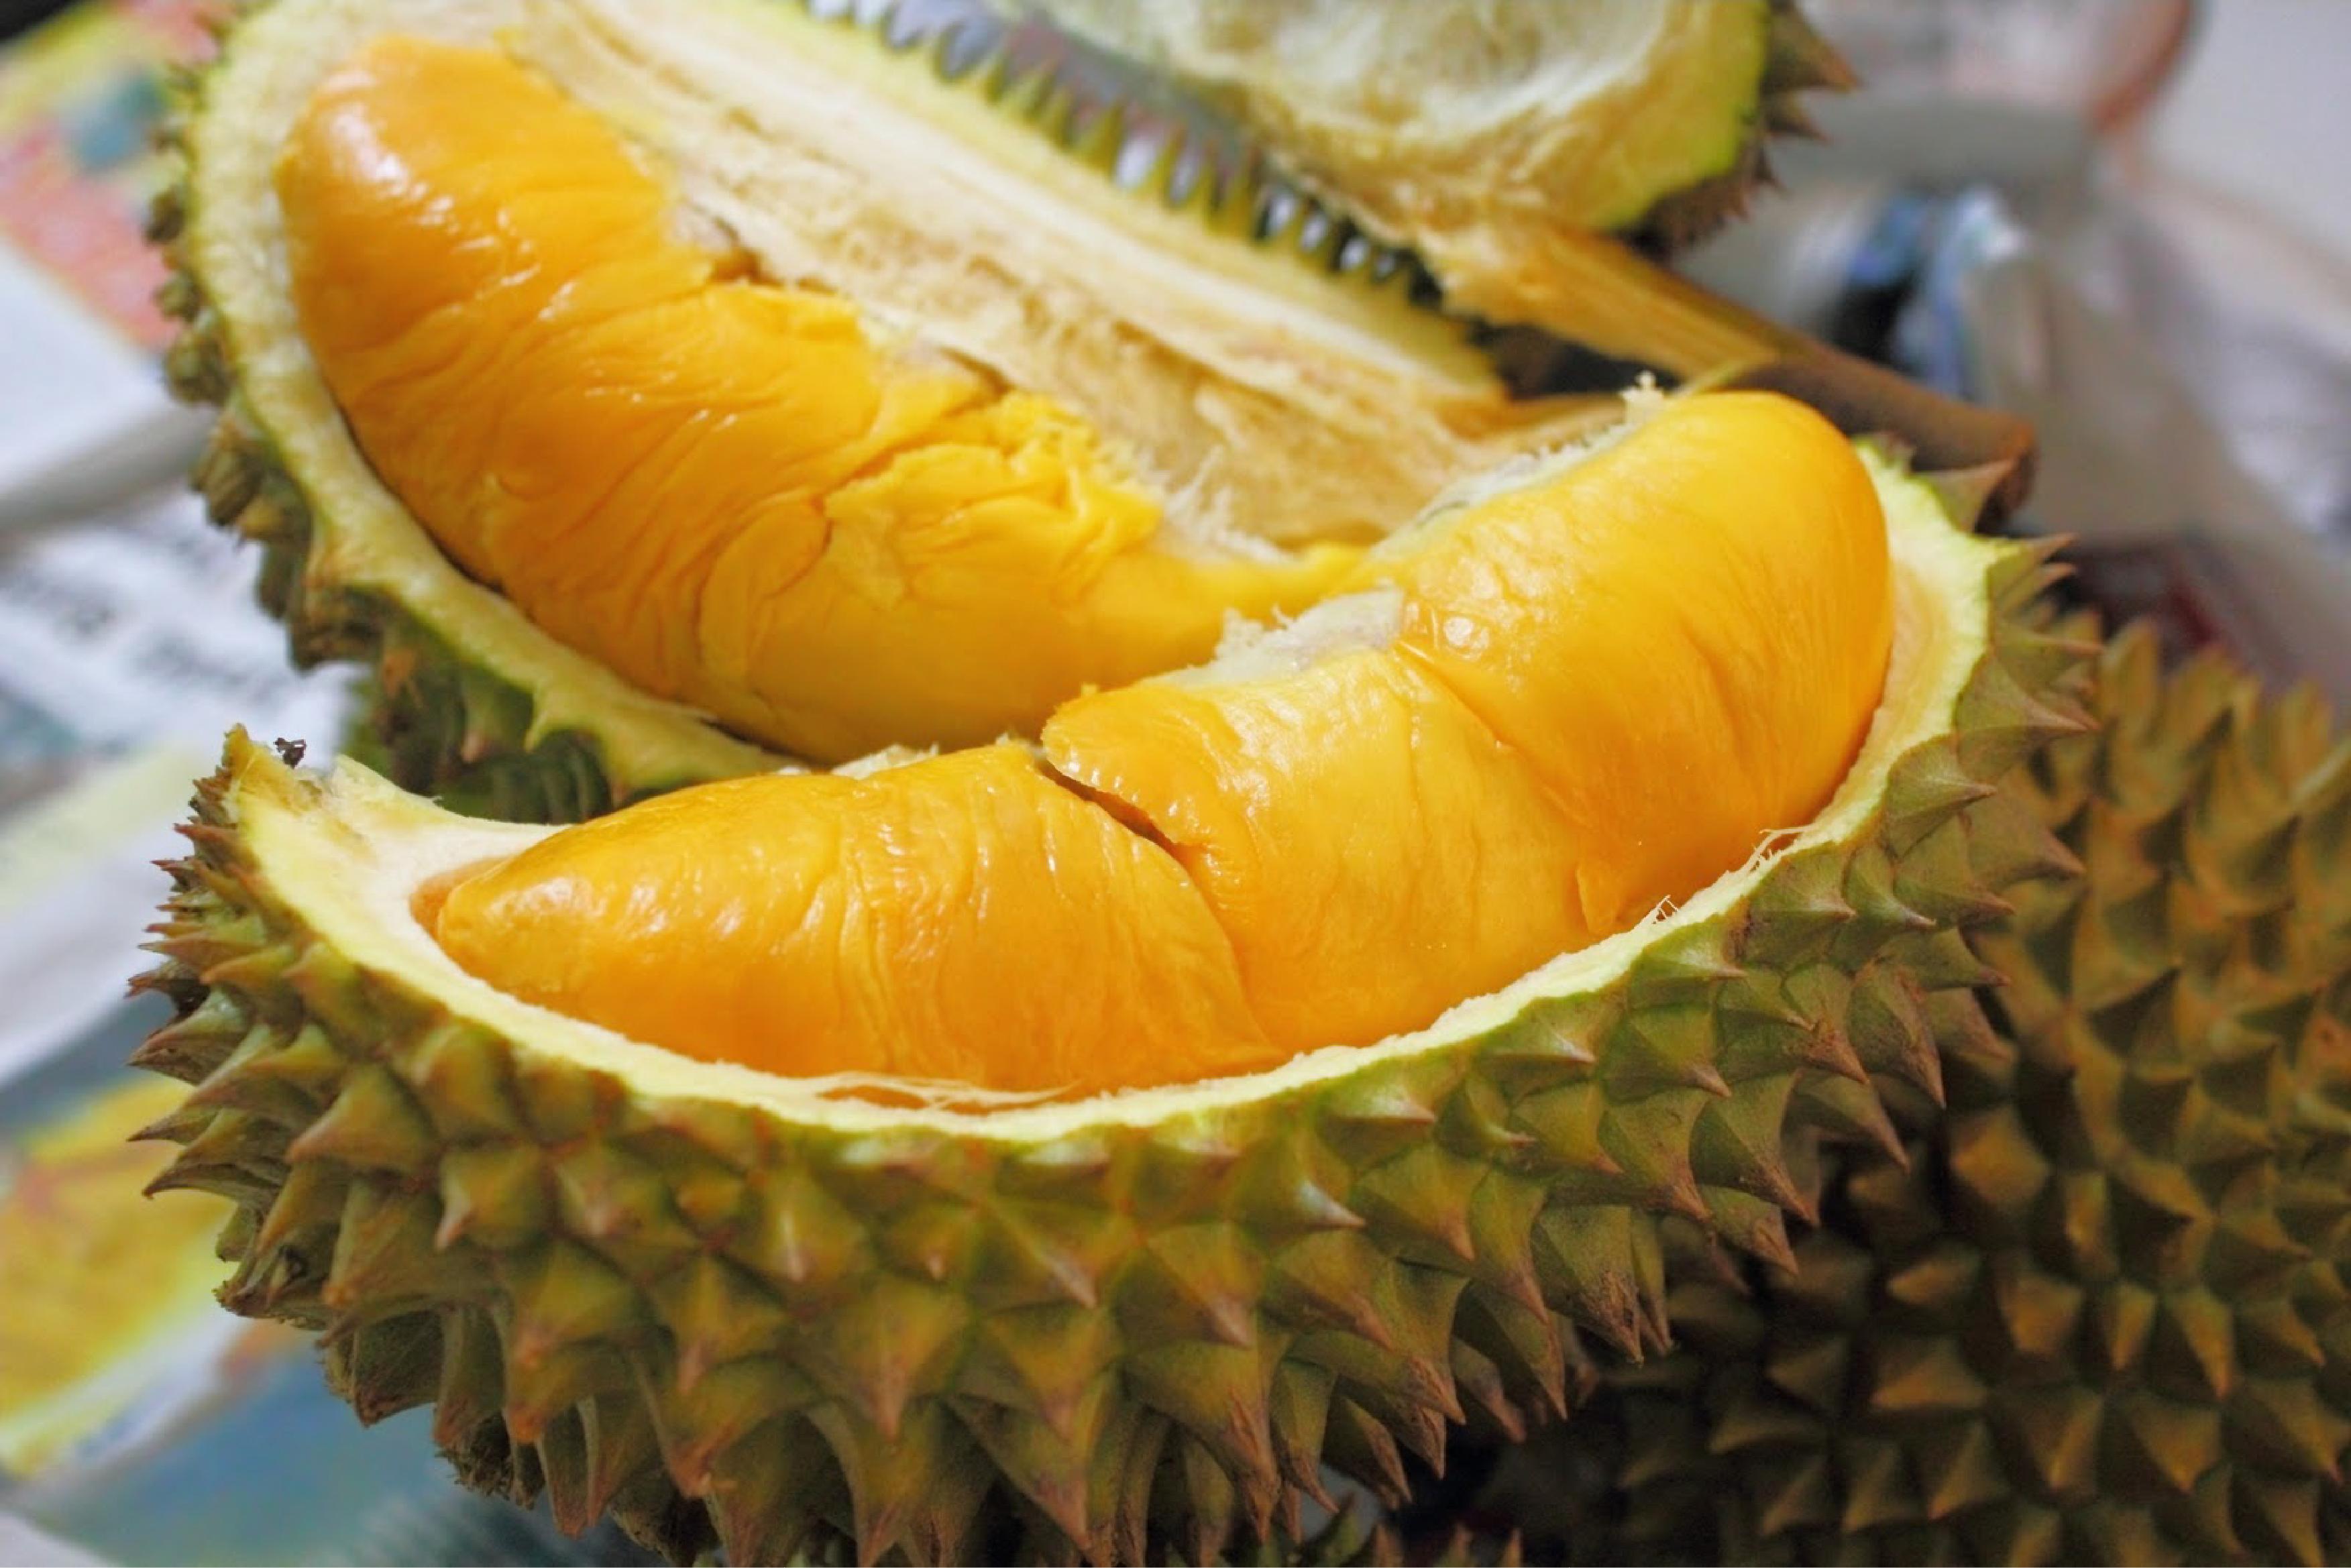 Nous avons demandé à nos collègues qui détestent le durian d’essayer le durian contre leur gré